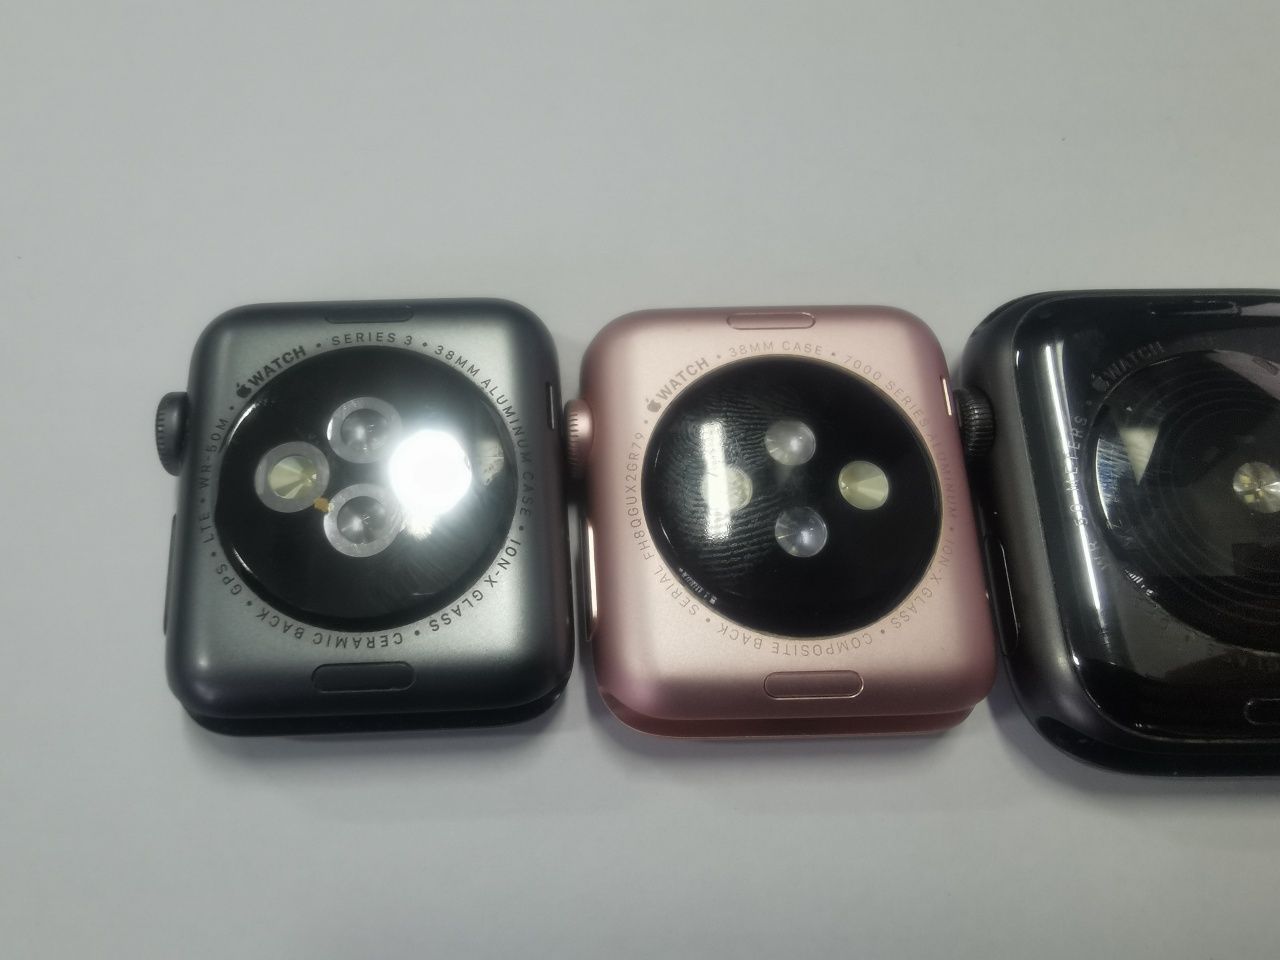 Ceasuri Apple watch defecte